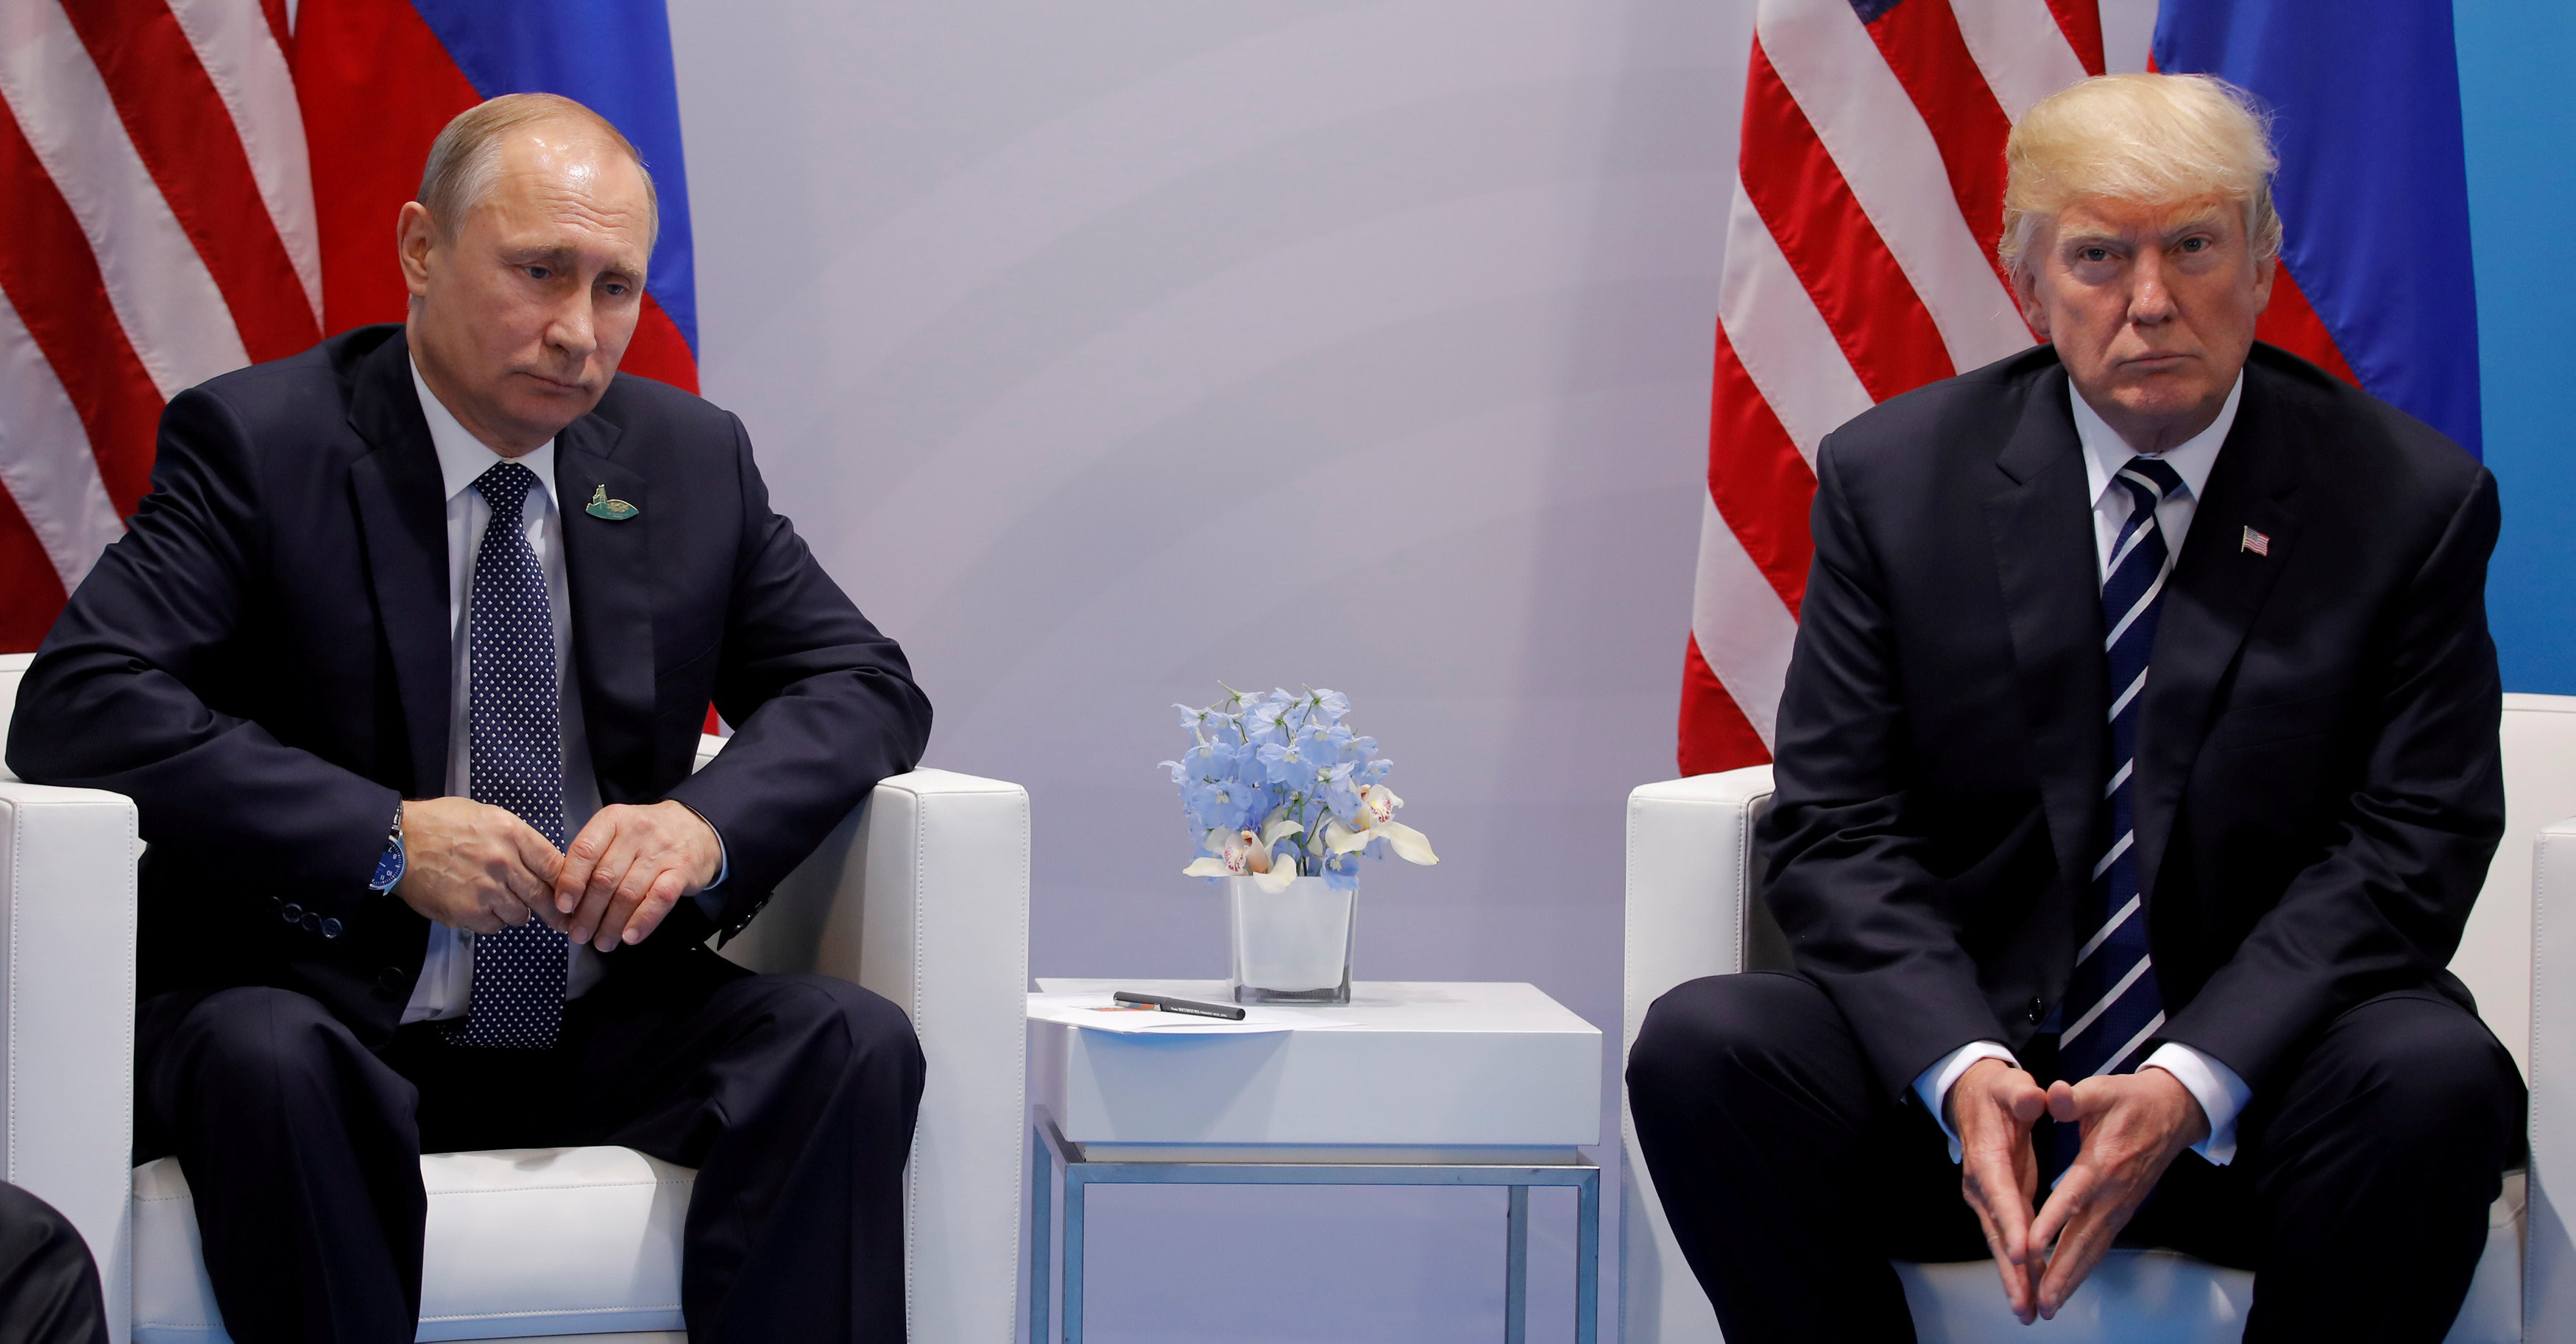 Встреча Трампа и Путина в Гамбурге на саммите "большой двадцатки" 7 июля 2017 года. Фото: &copy; REUTERS/Carlos Barria